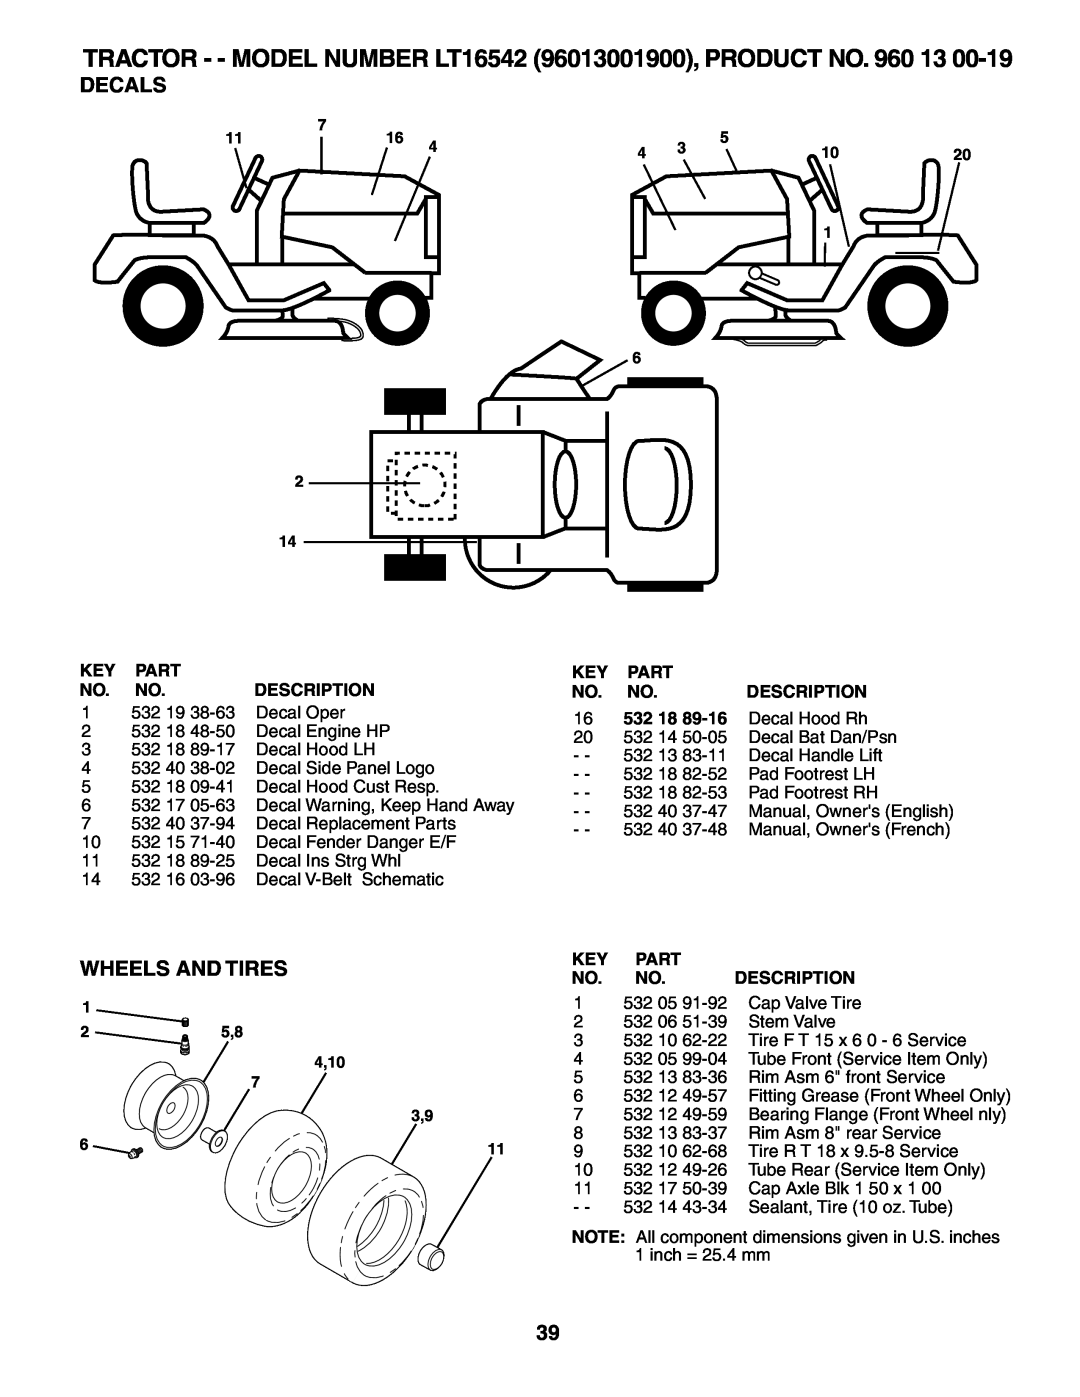 Husqvarna Decals, Wheels And Tires, TRACTOR - - MODEL NUMBER LT16542 96013001900, PRODUCT NO. 960 13, Part, Description 